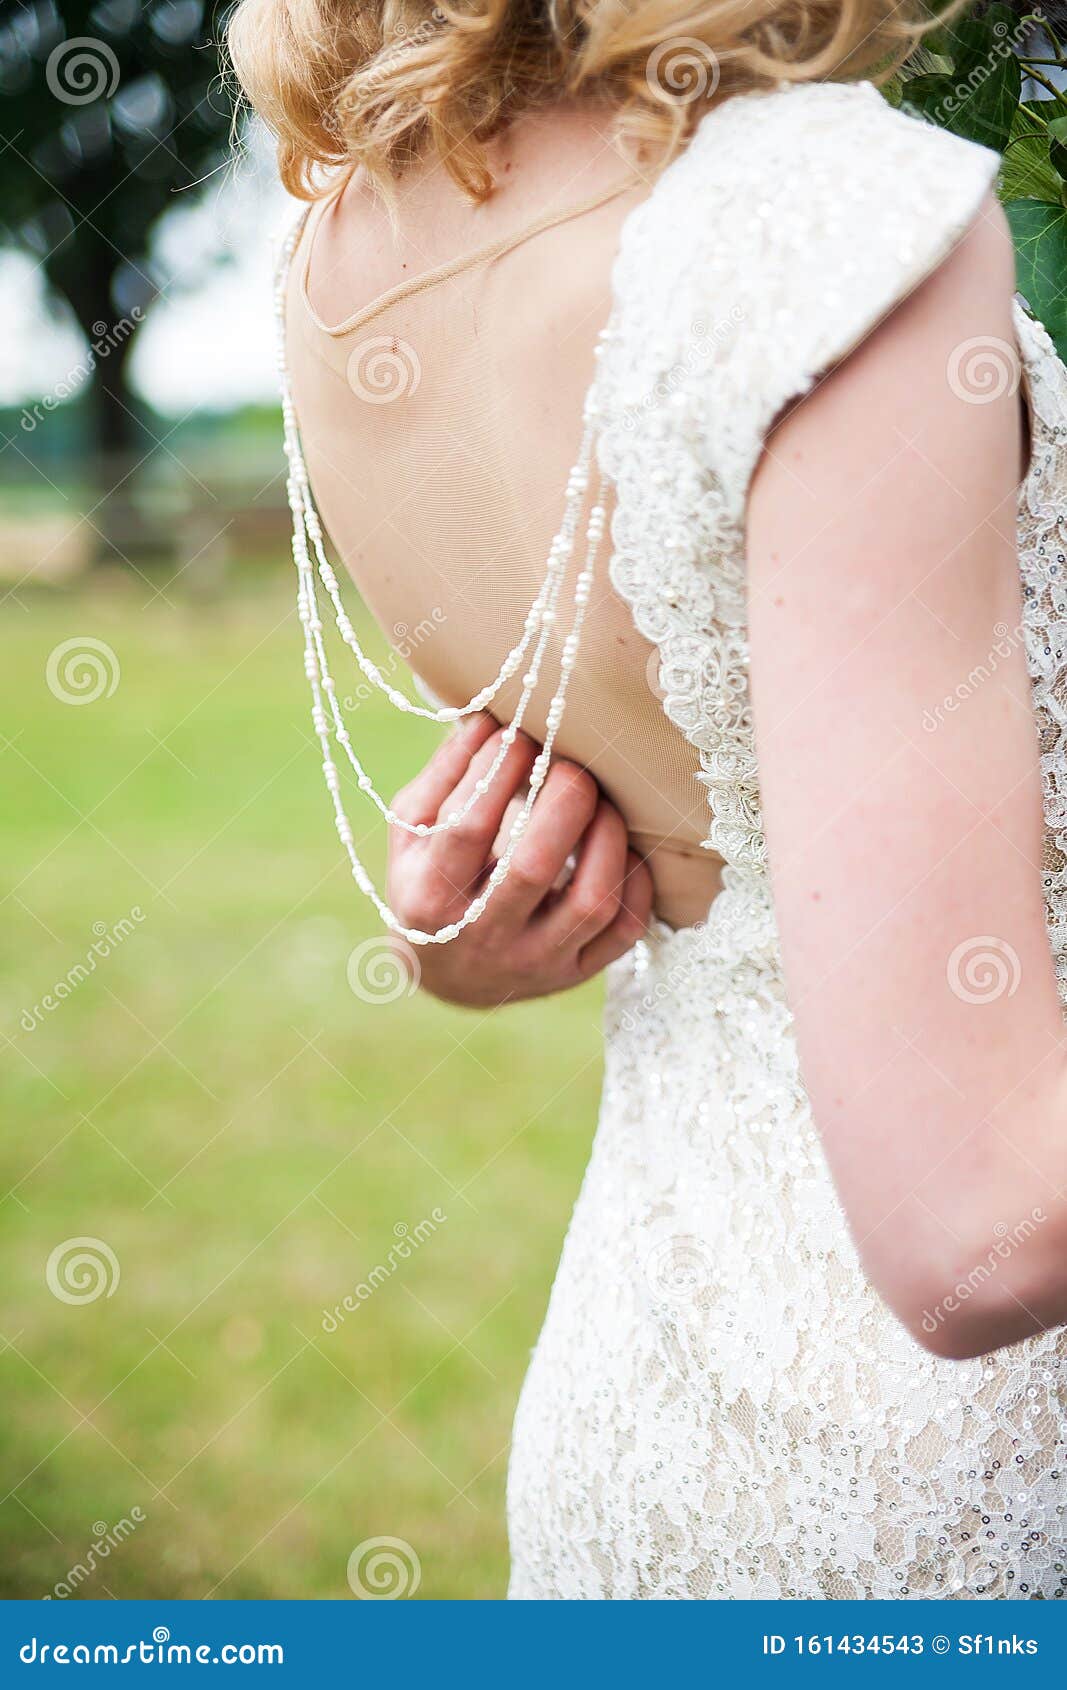 Белокурая голая невеста на фото